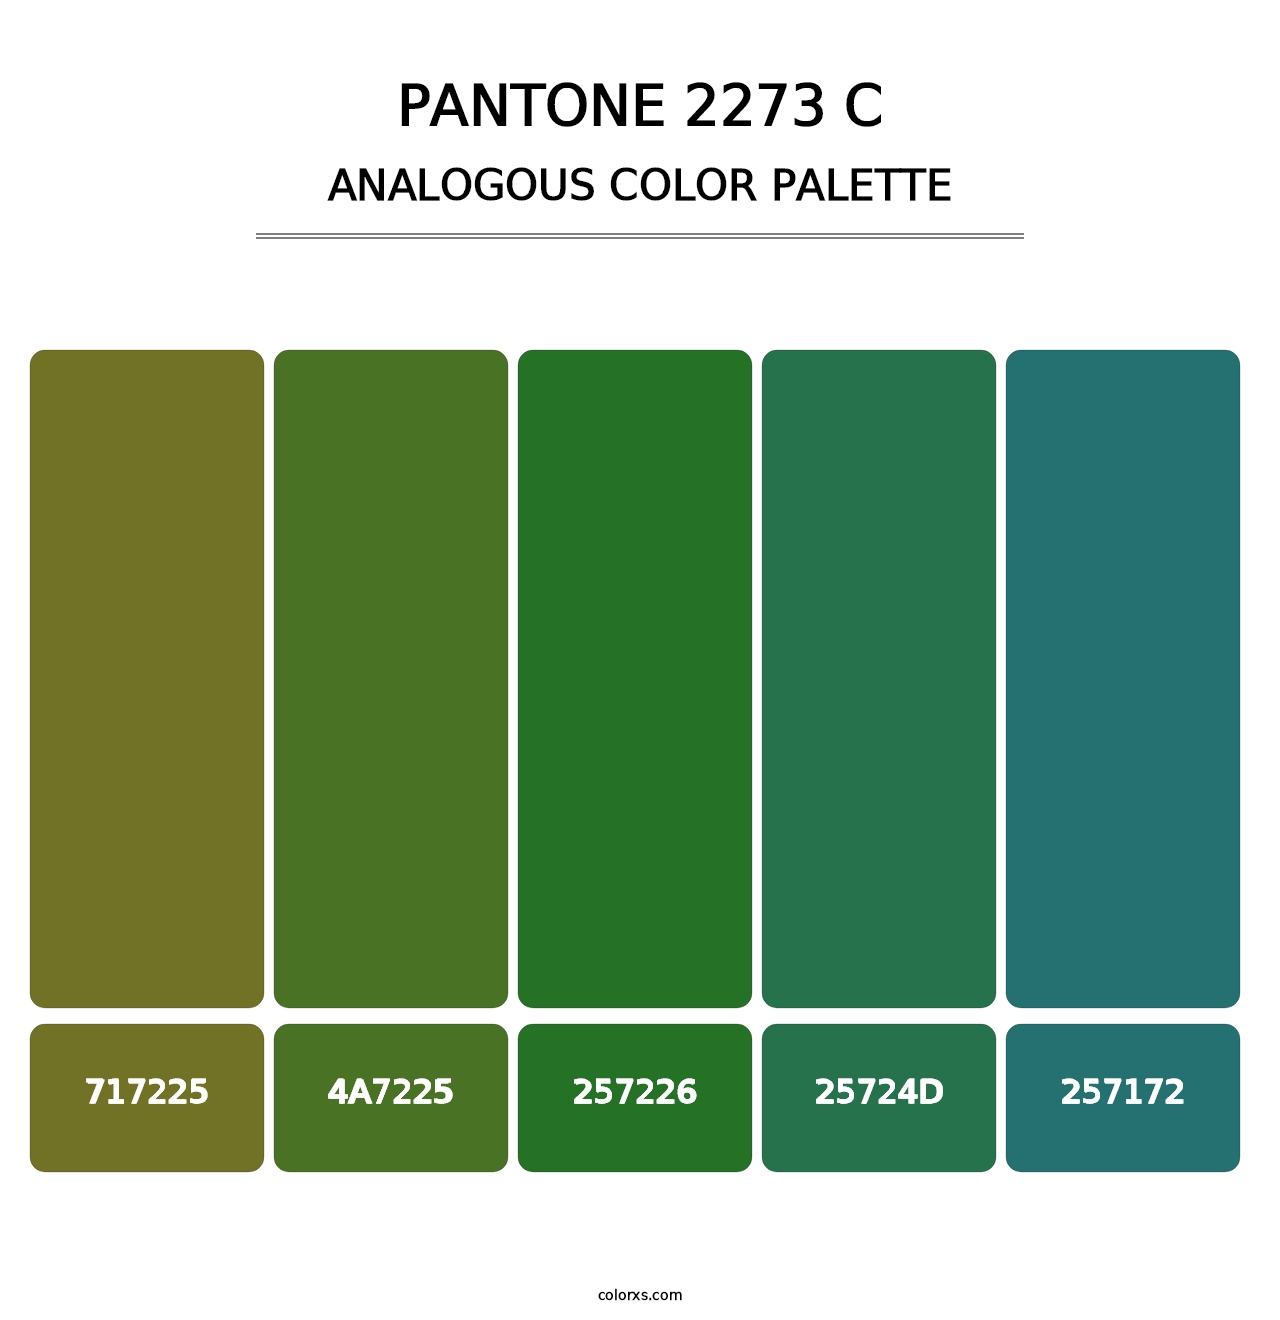 PANTONE 2273 C - Analogous Color Palette